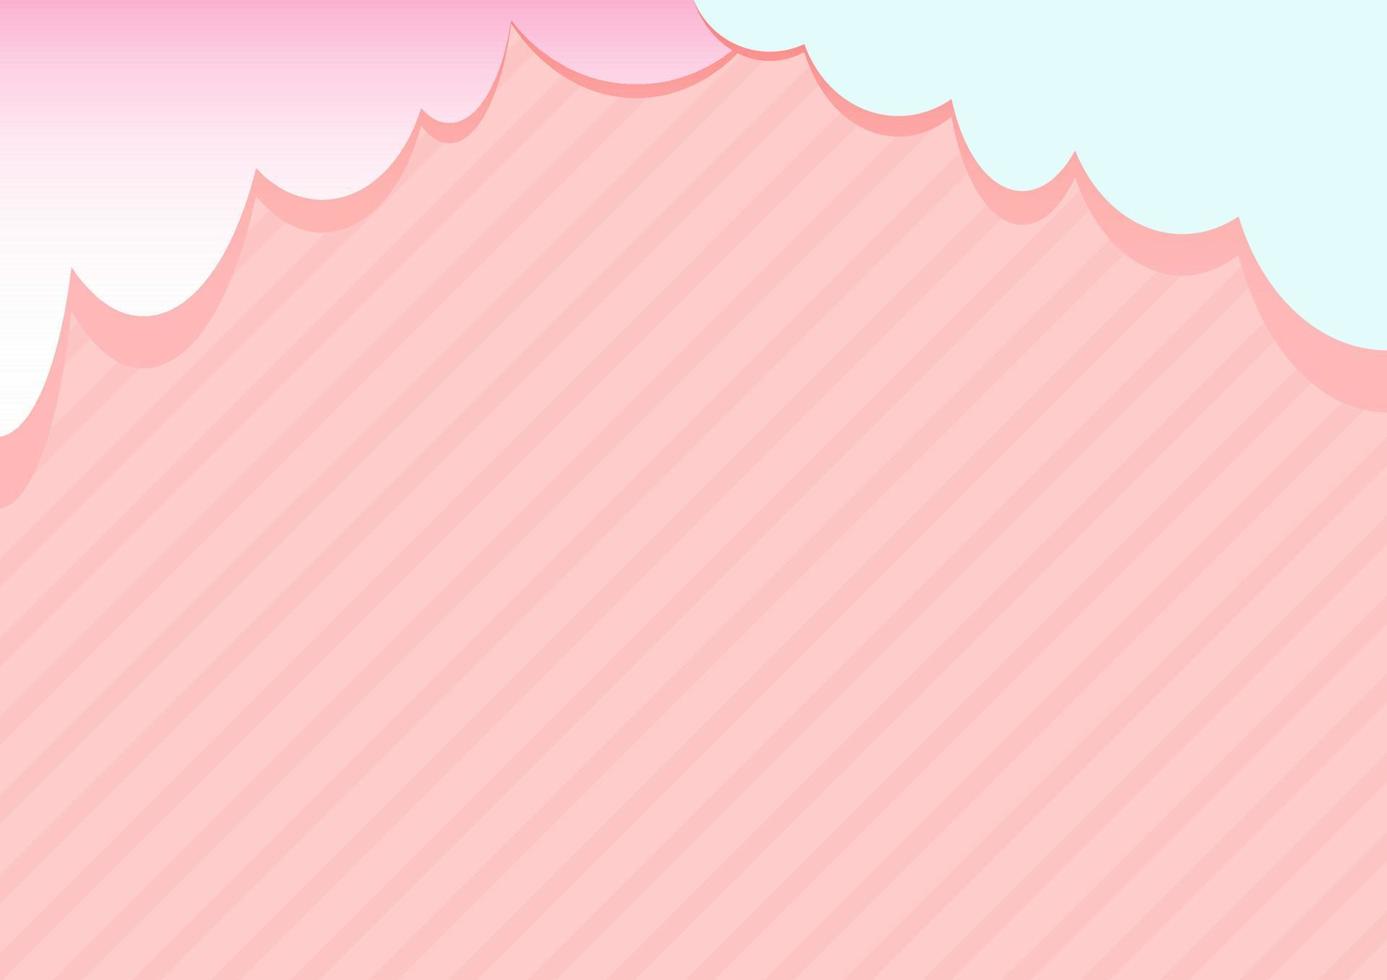 fundo rosa doce com listras oblíquas e nuvens no topo vetor